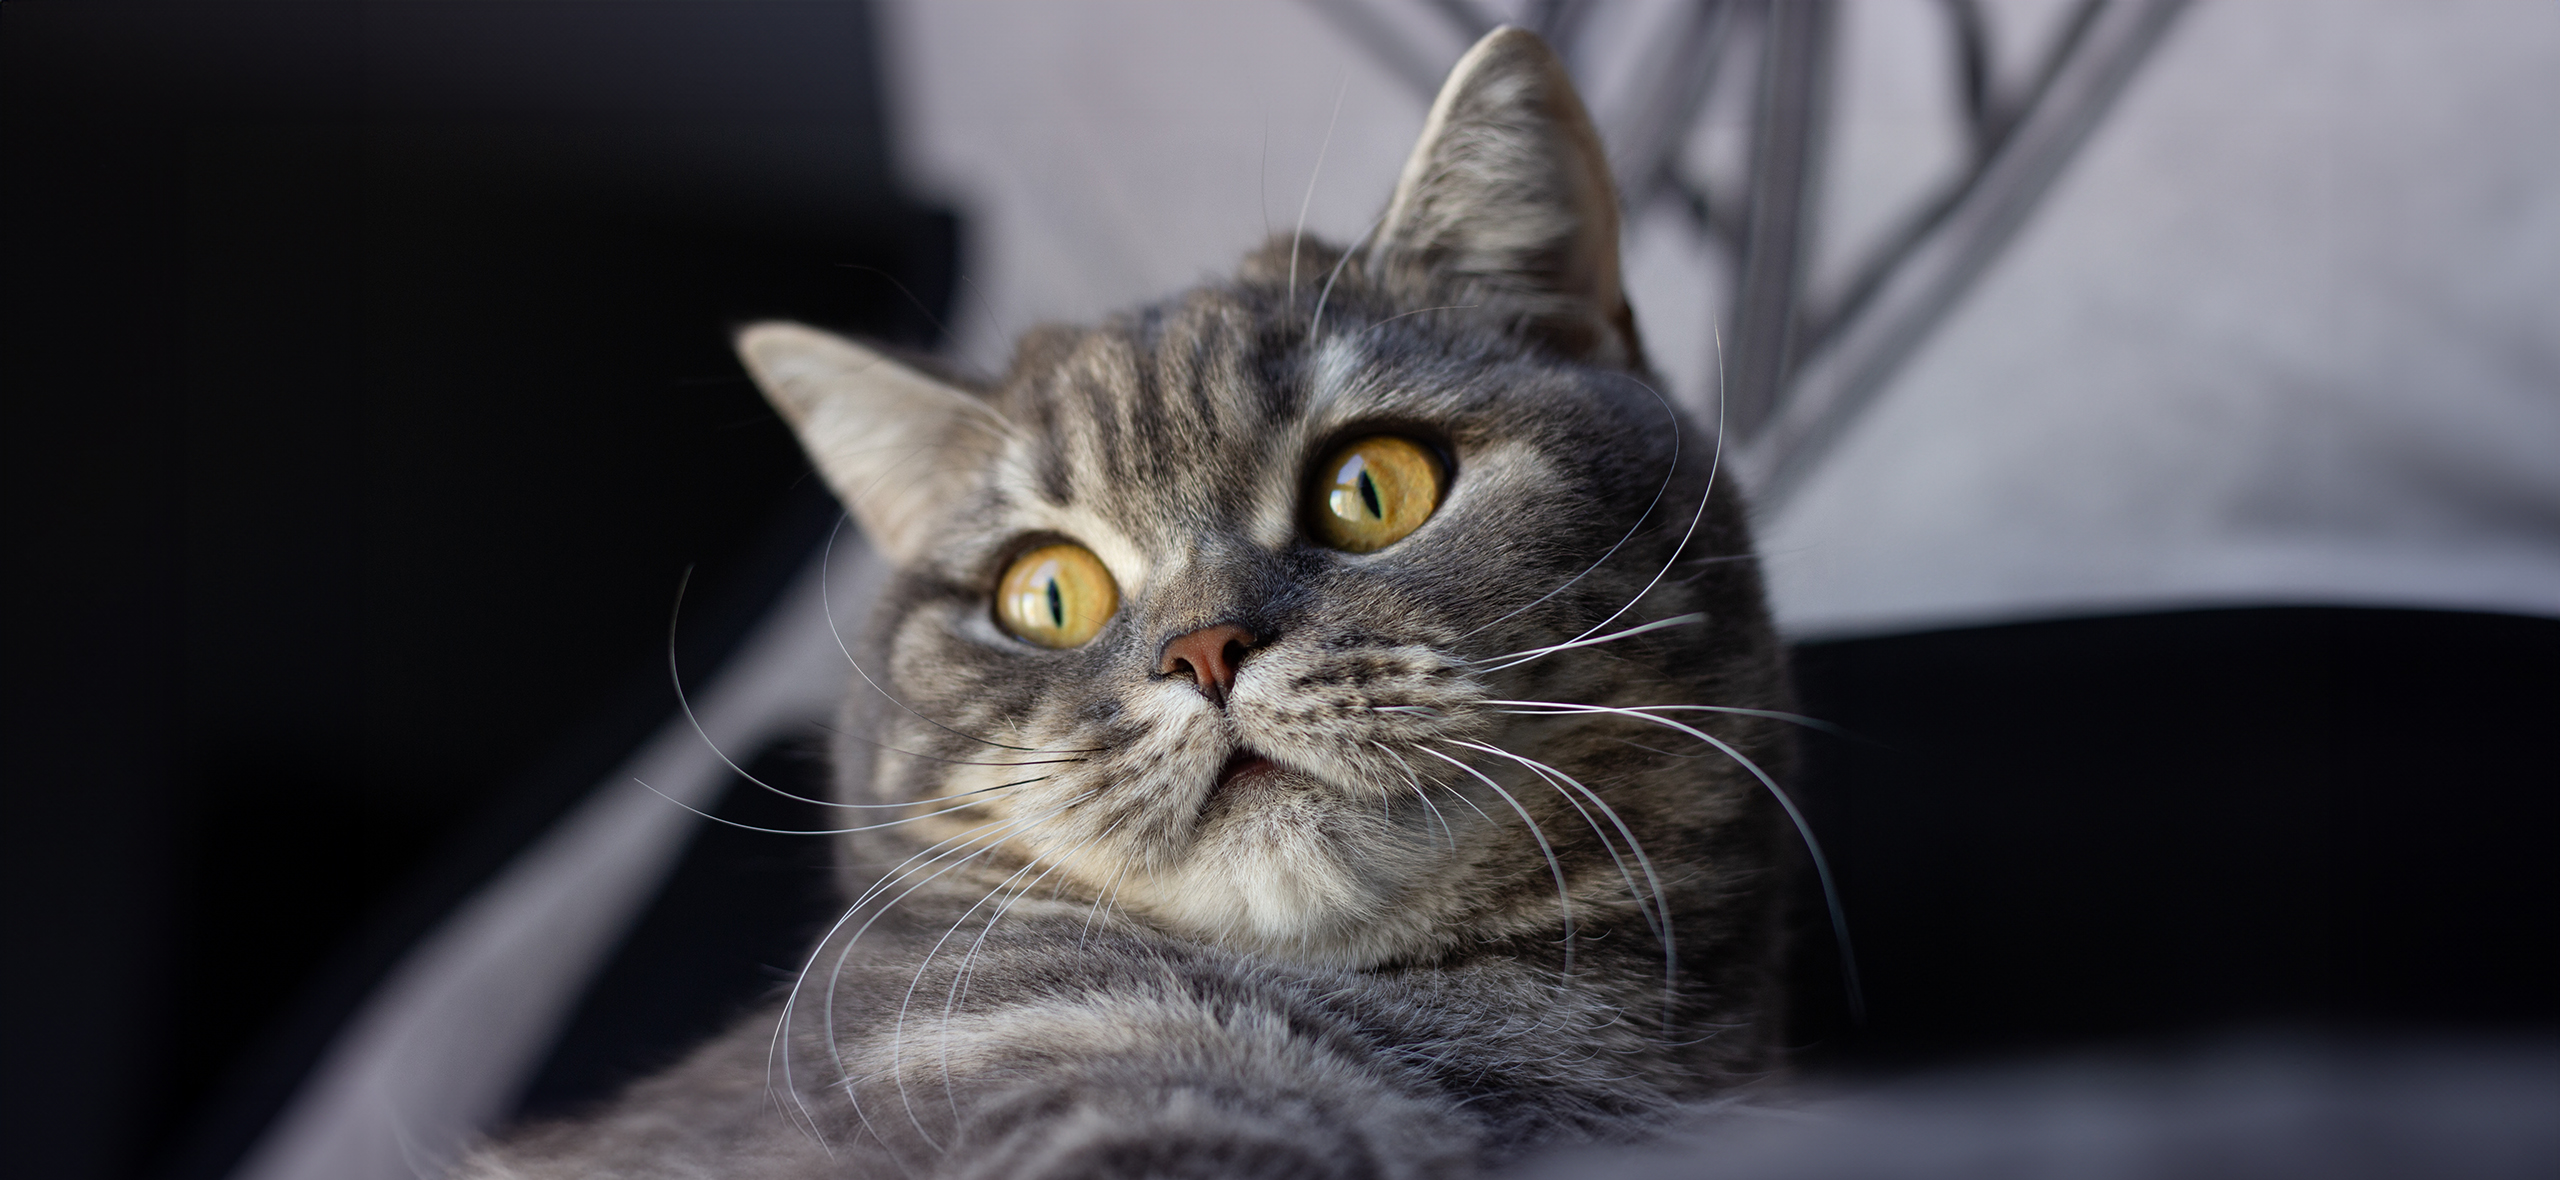 Правда ли, что существует синдром уставших усов у кошек?